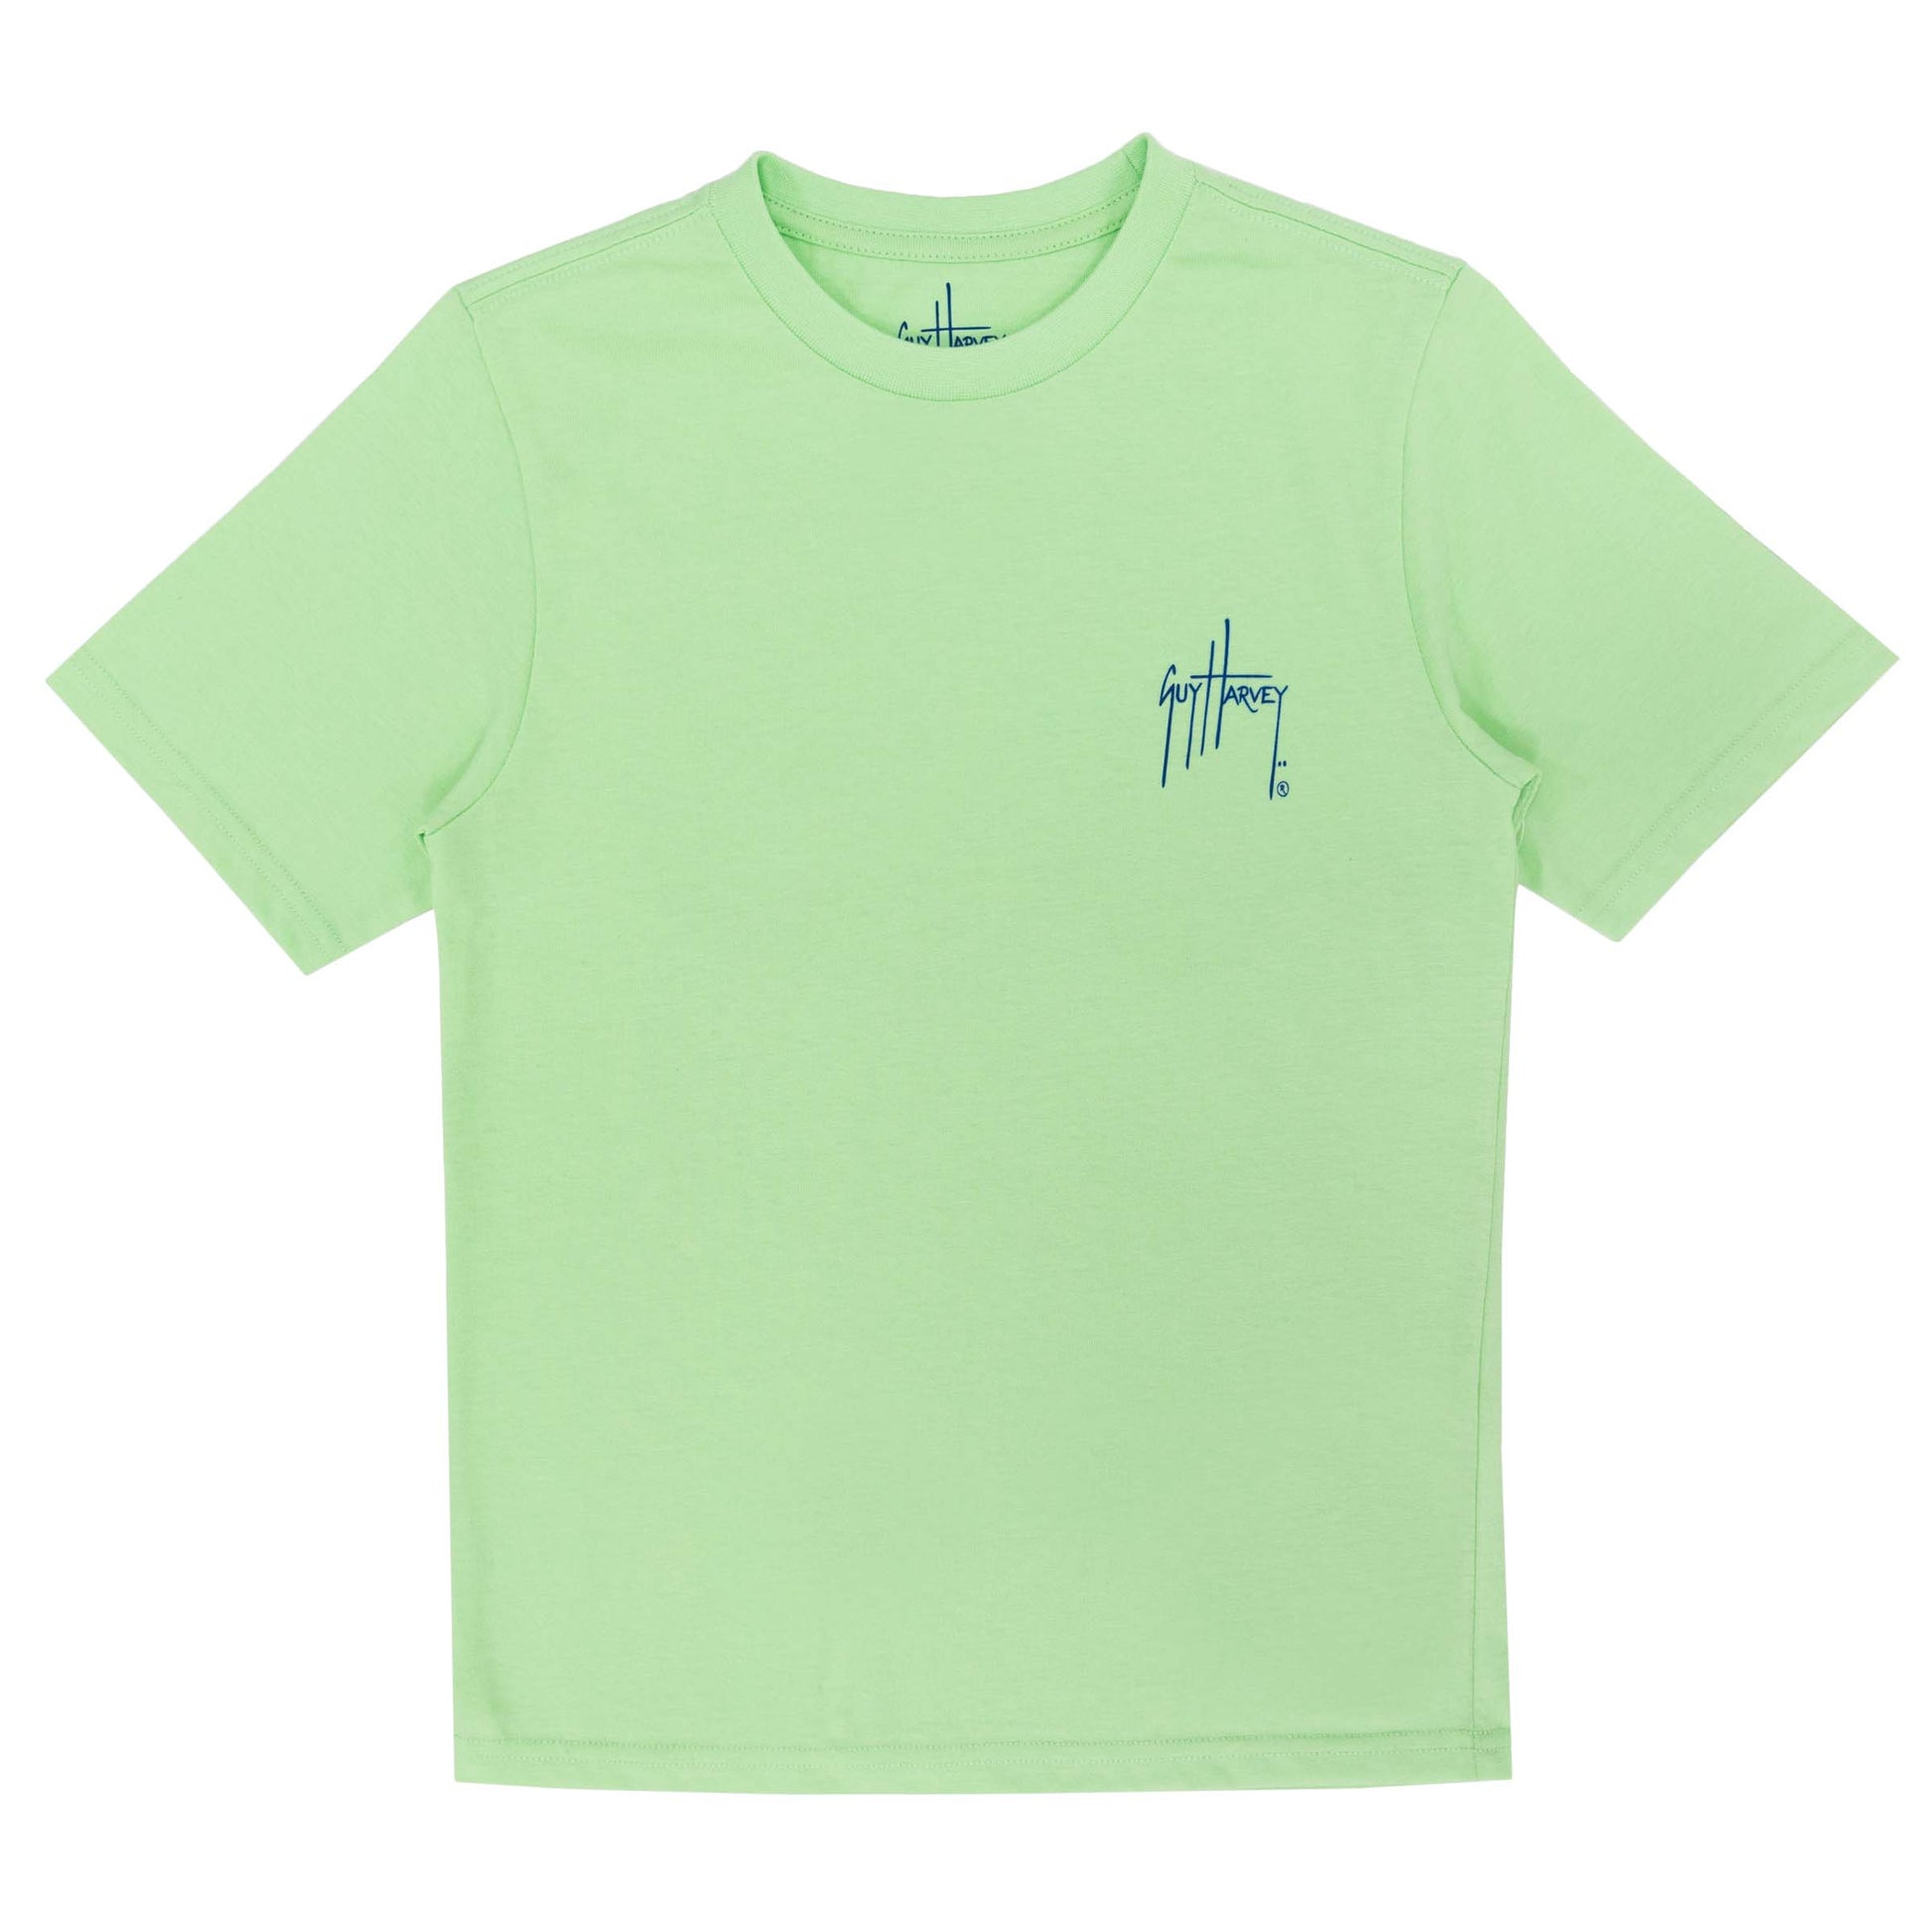 Kids Blue Pointer Short Sleeve Green T-Shirt View 3